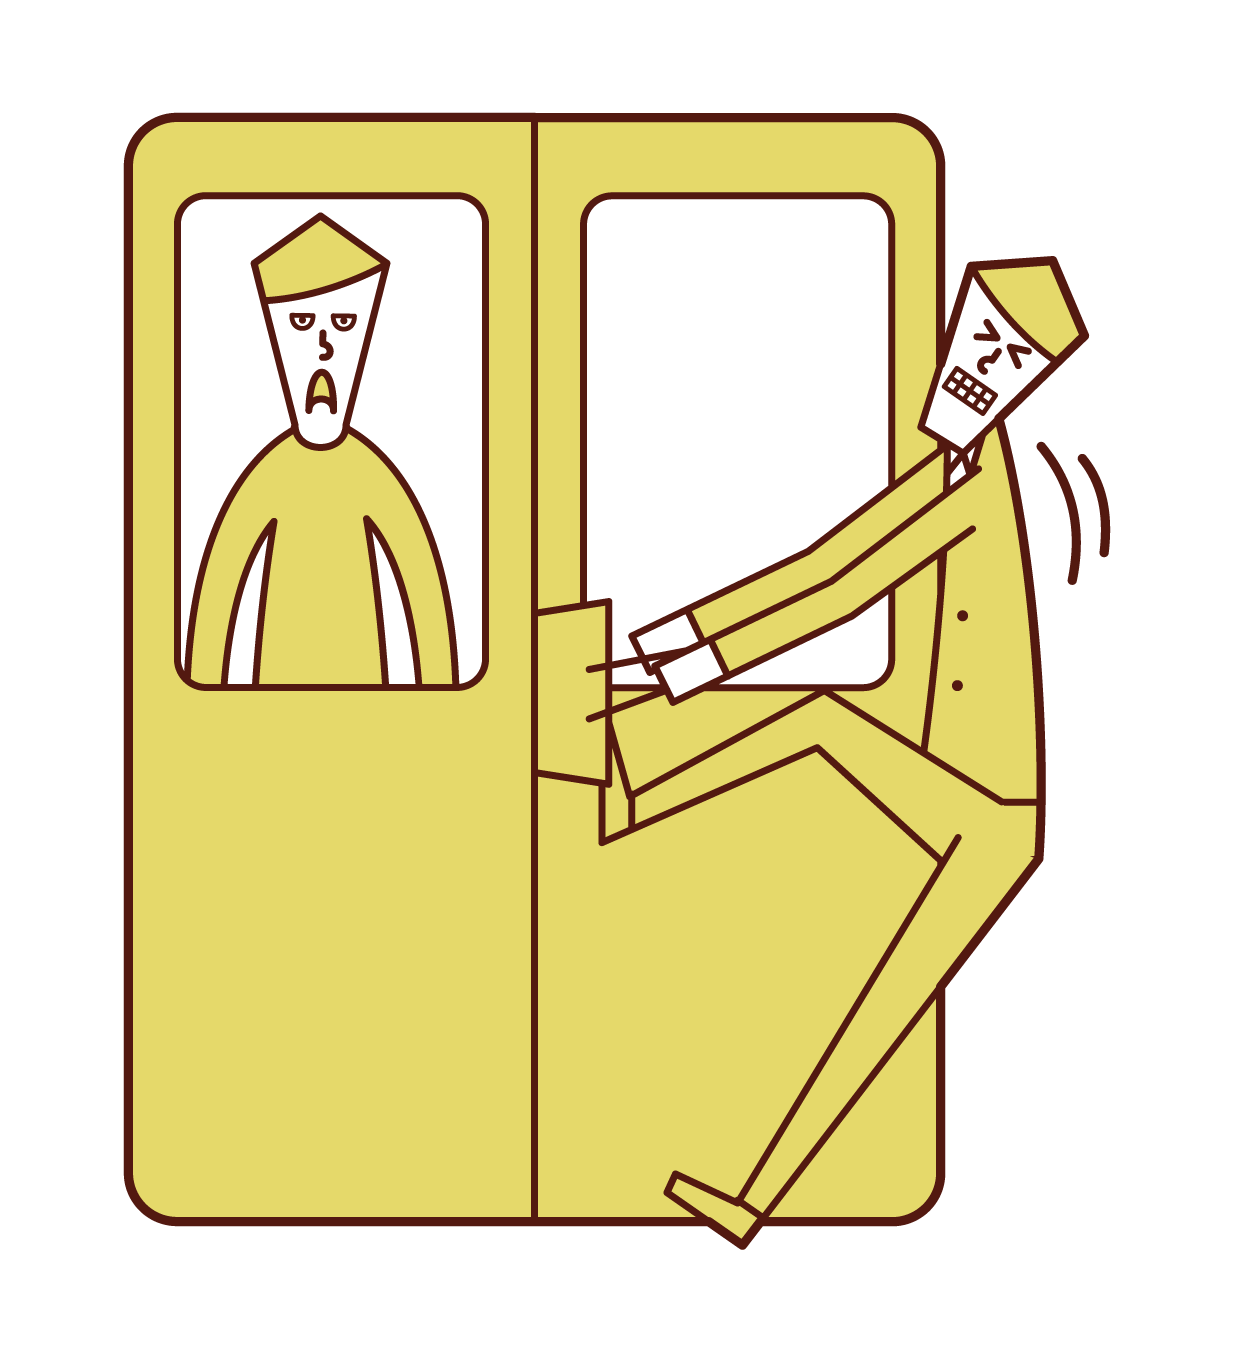 火車門上夾著行李的人（男性）的插圖